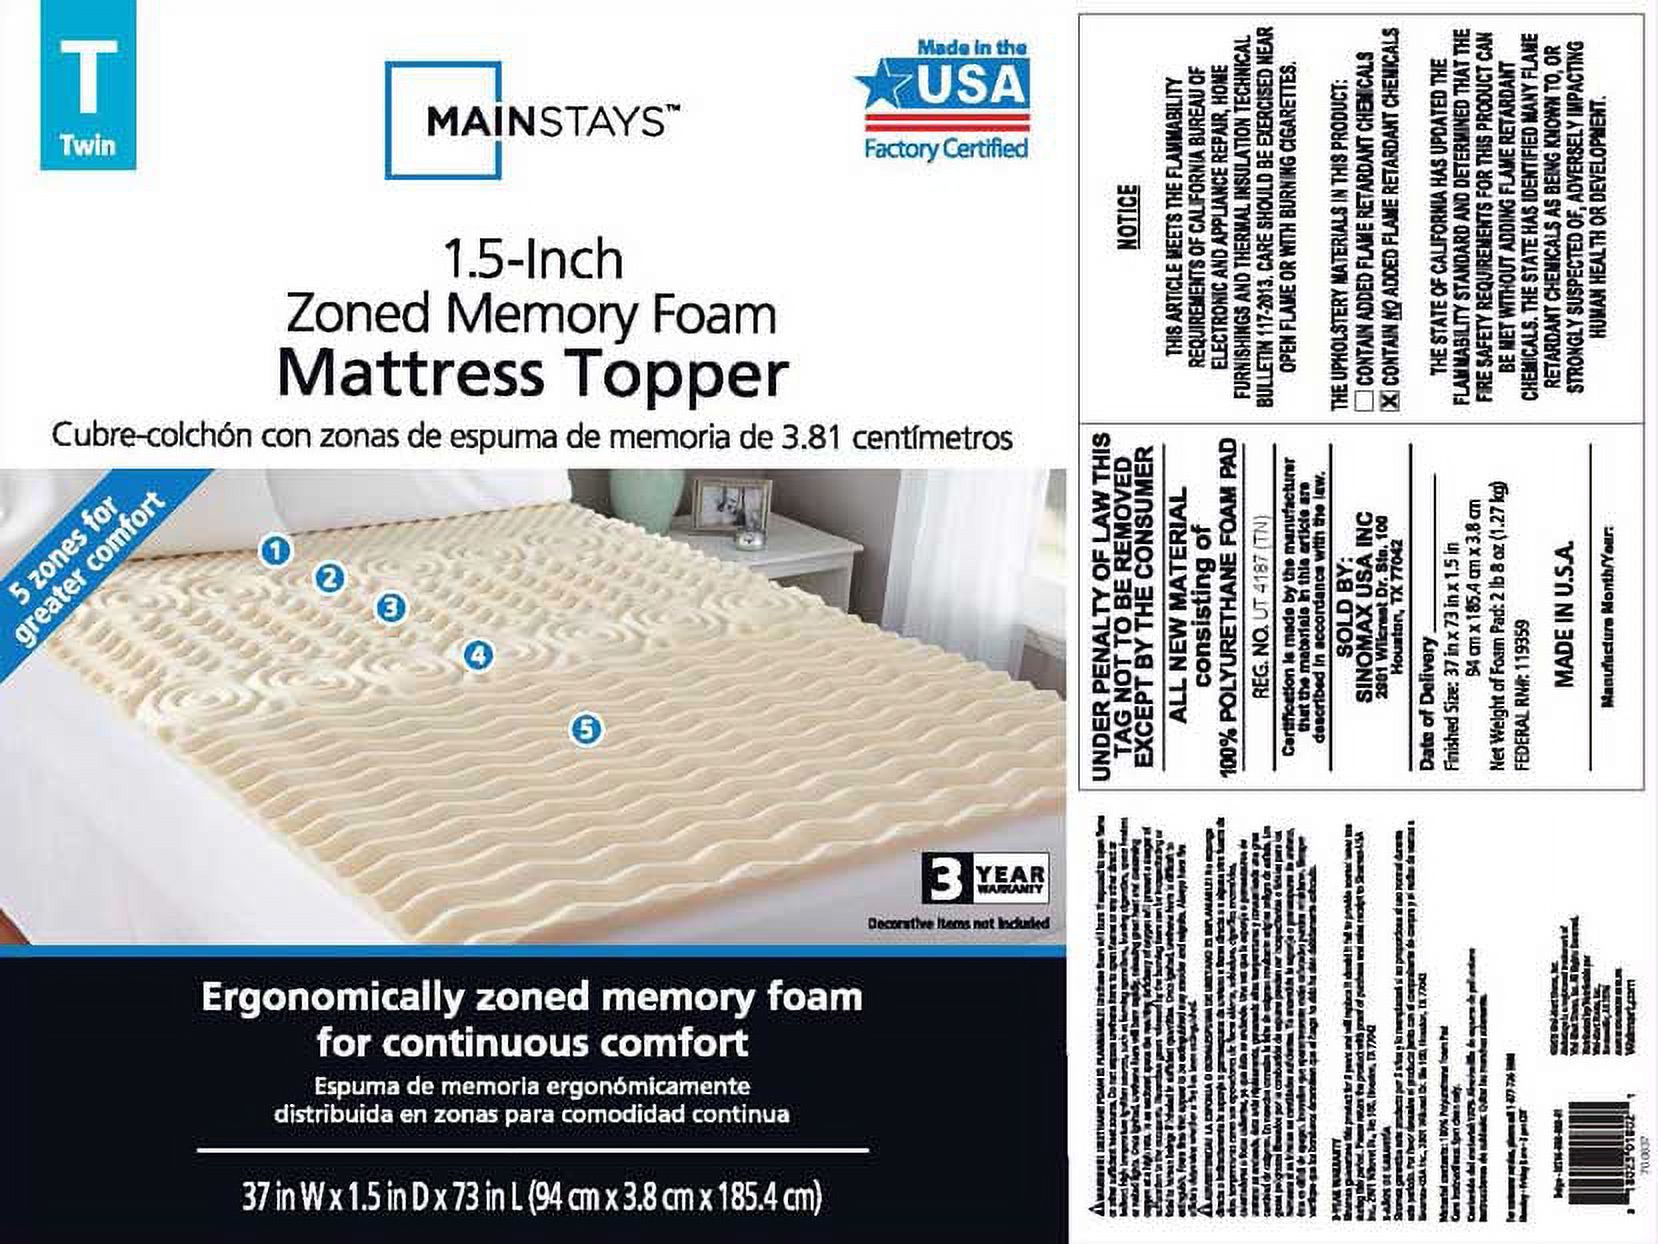 mainstays 1.5in zoned memory foam mattress topper